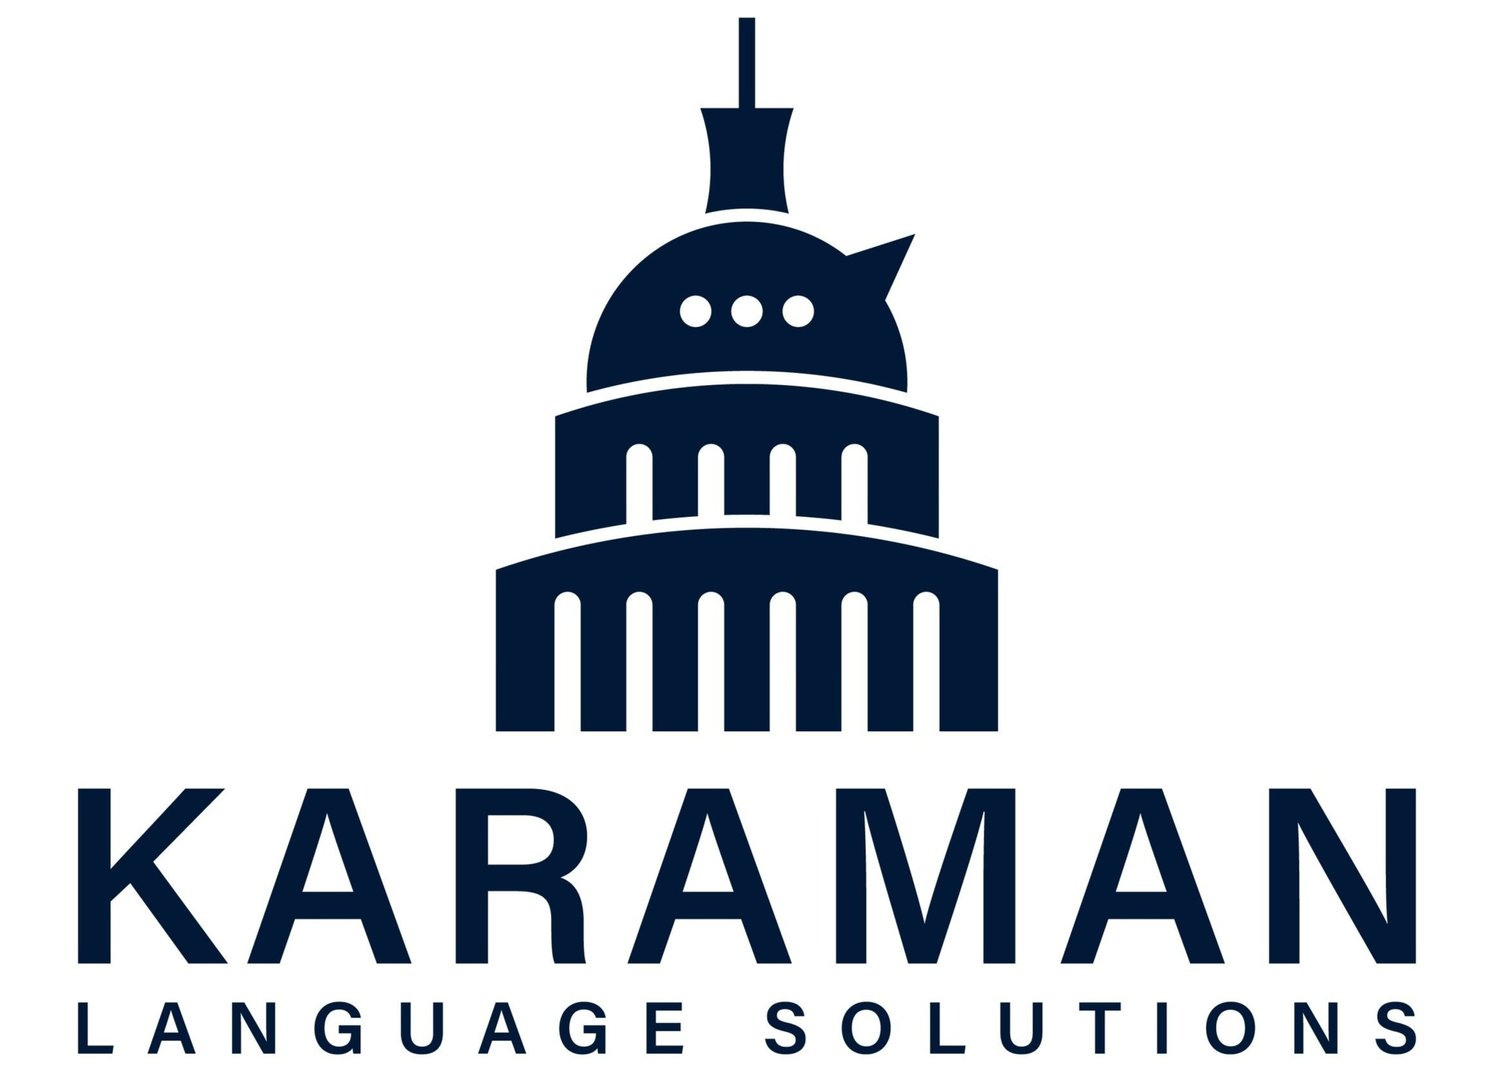 Karaman Language Solutions | Turkish-English Language Services in the Washington, D.C. Metropolitan Area